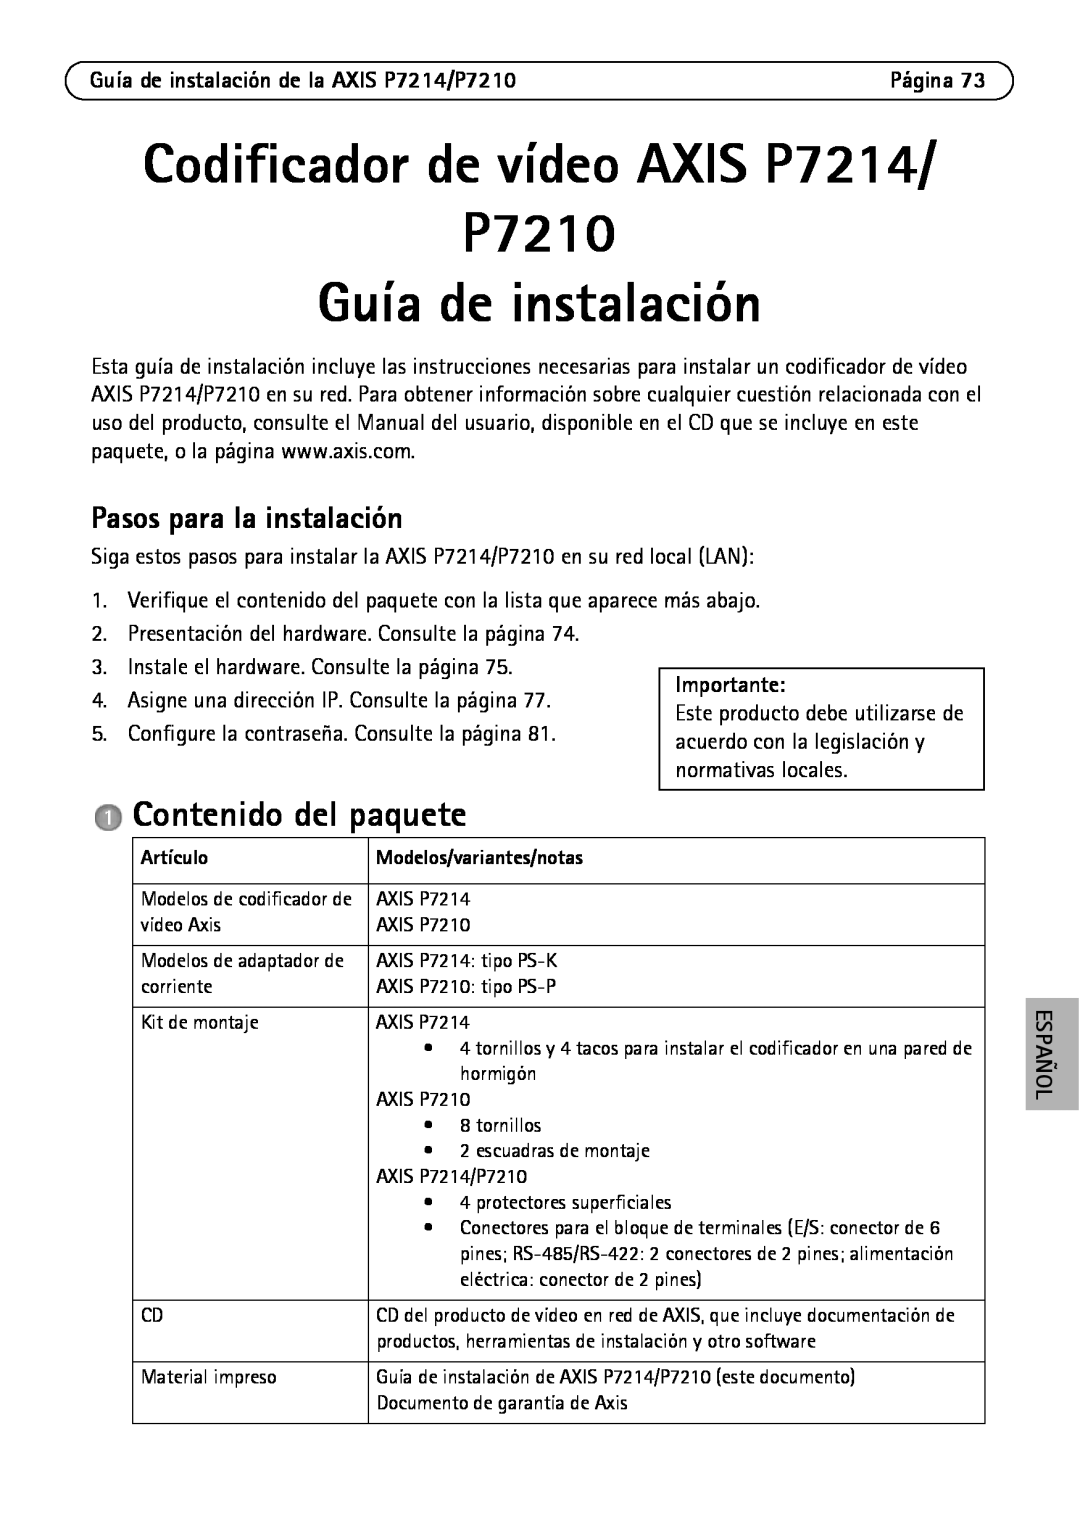 Axis Communications P7214/P7210 Codificador de vídeo AXIS P7214 P7210 Guía de instalación, Contenido del paquete, Artículo 